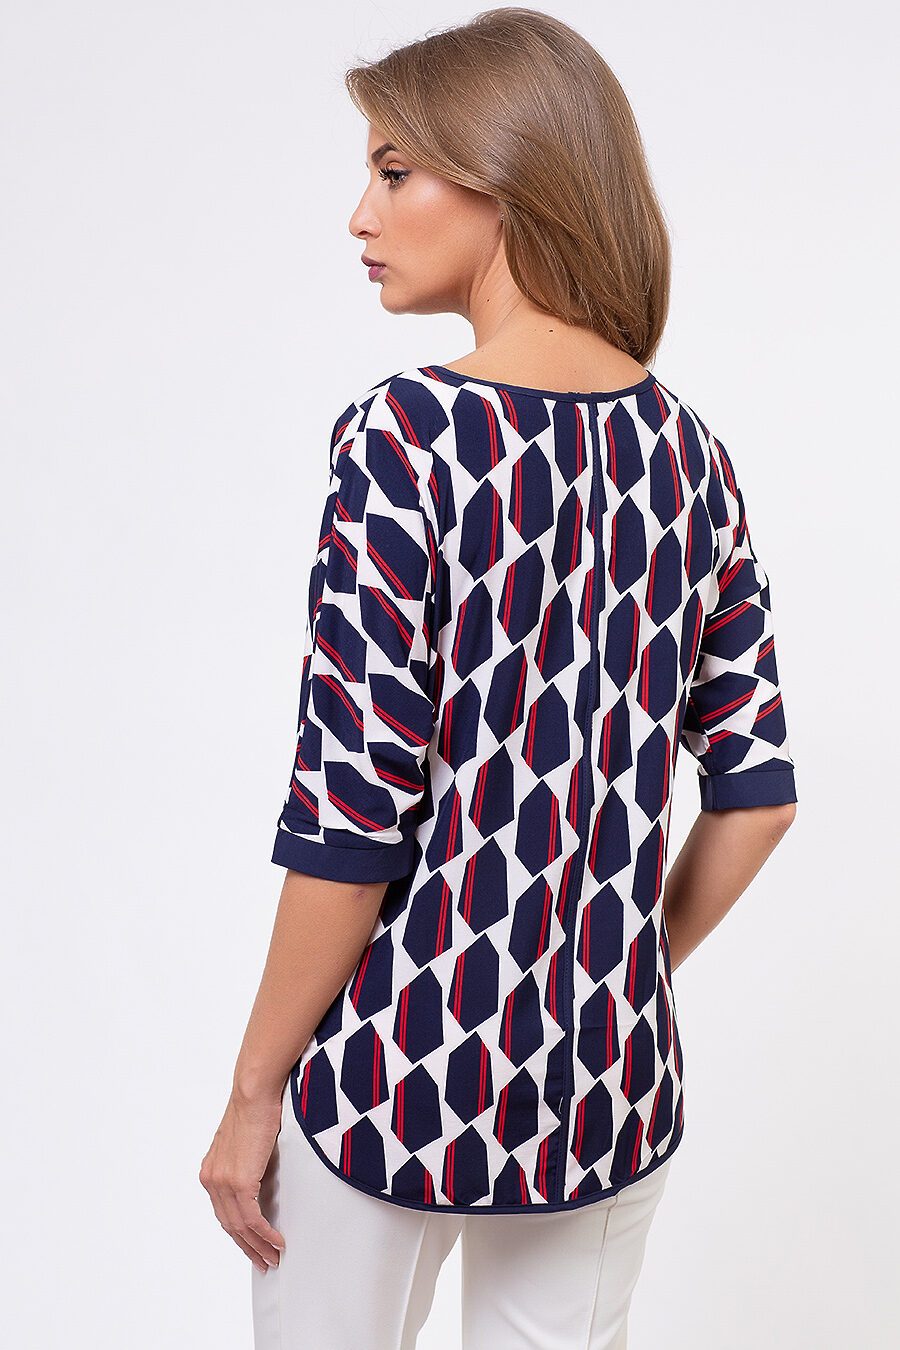 Блуза TUTACHI (127300), купить в Moyo.moda